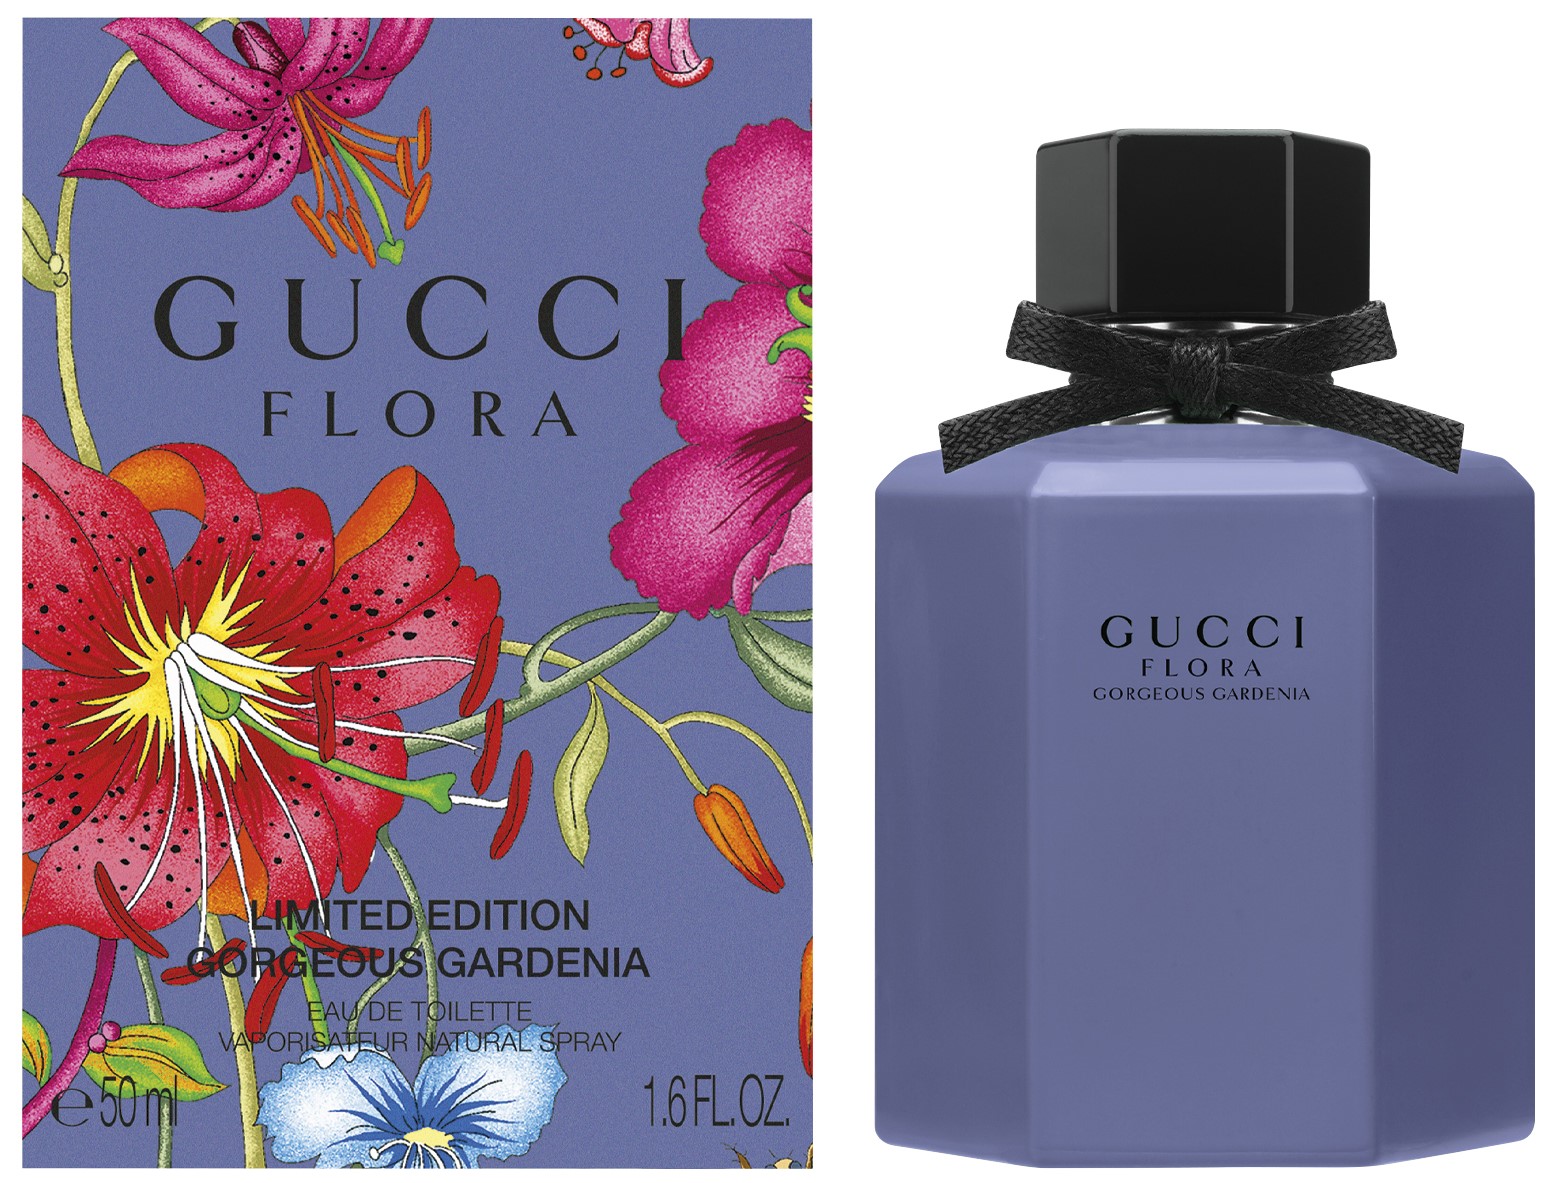 Gucci Flora Gorgeous Gardenia Limited Edition 2020 Eau de Toilette